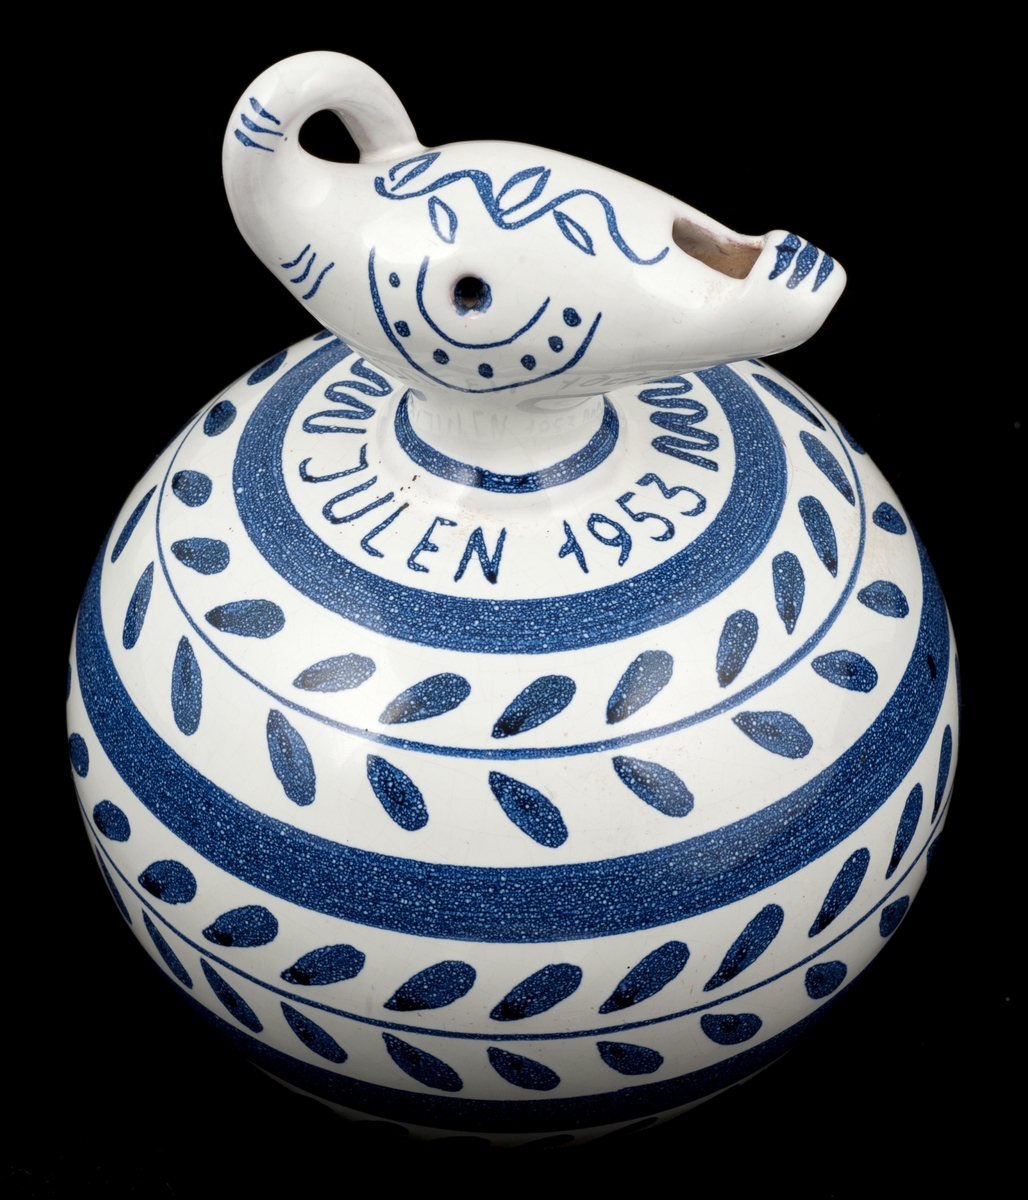 Sparebøsse i keramikk, rund kropp med noe som ligner et elefant-hode på toppen. Hvit, med blått mønster.